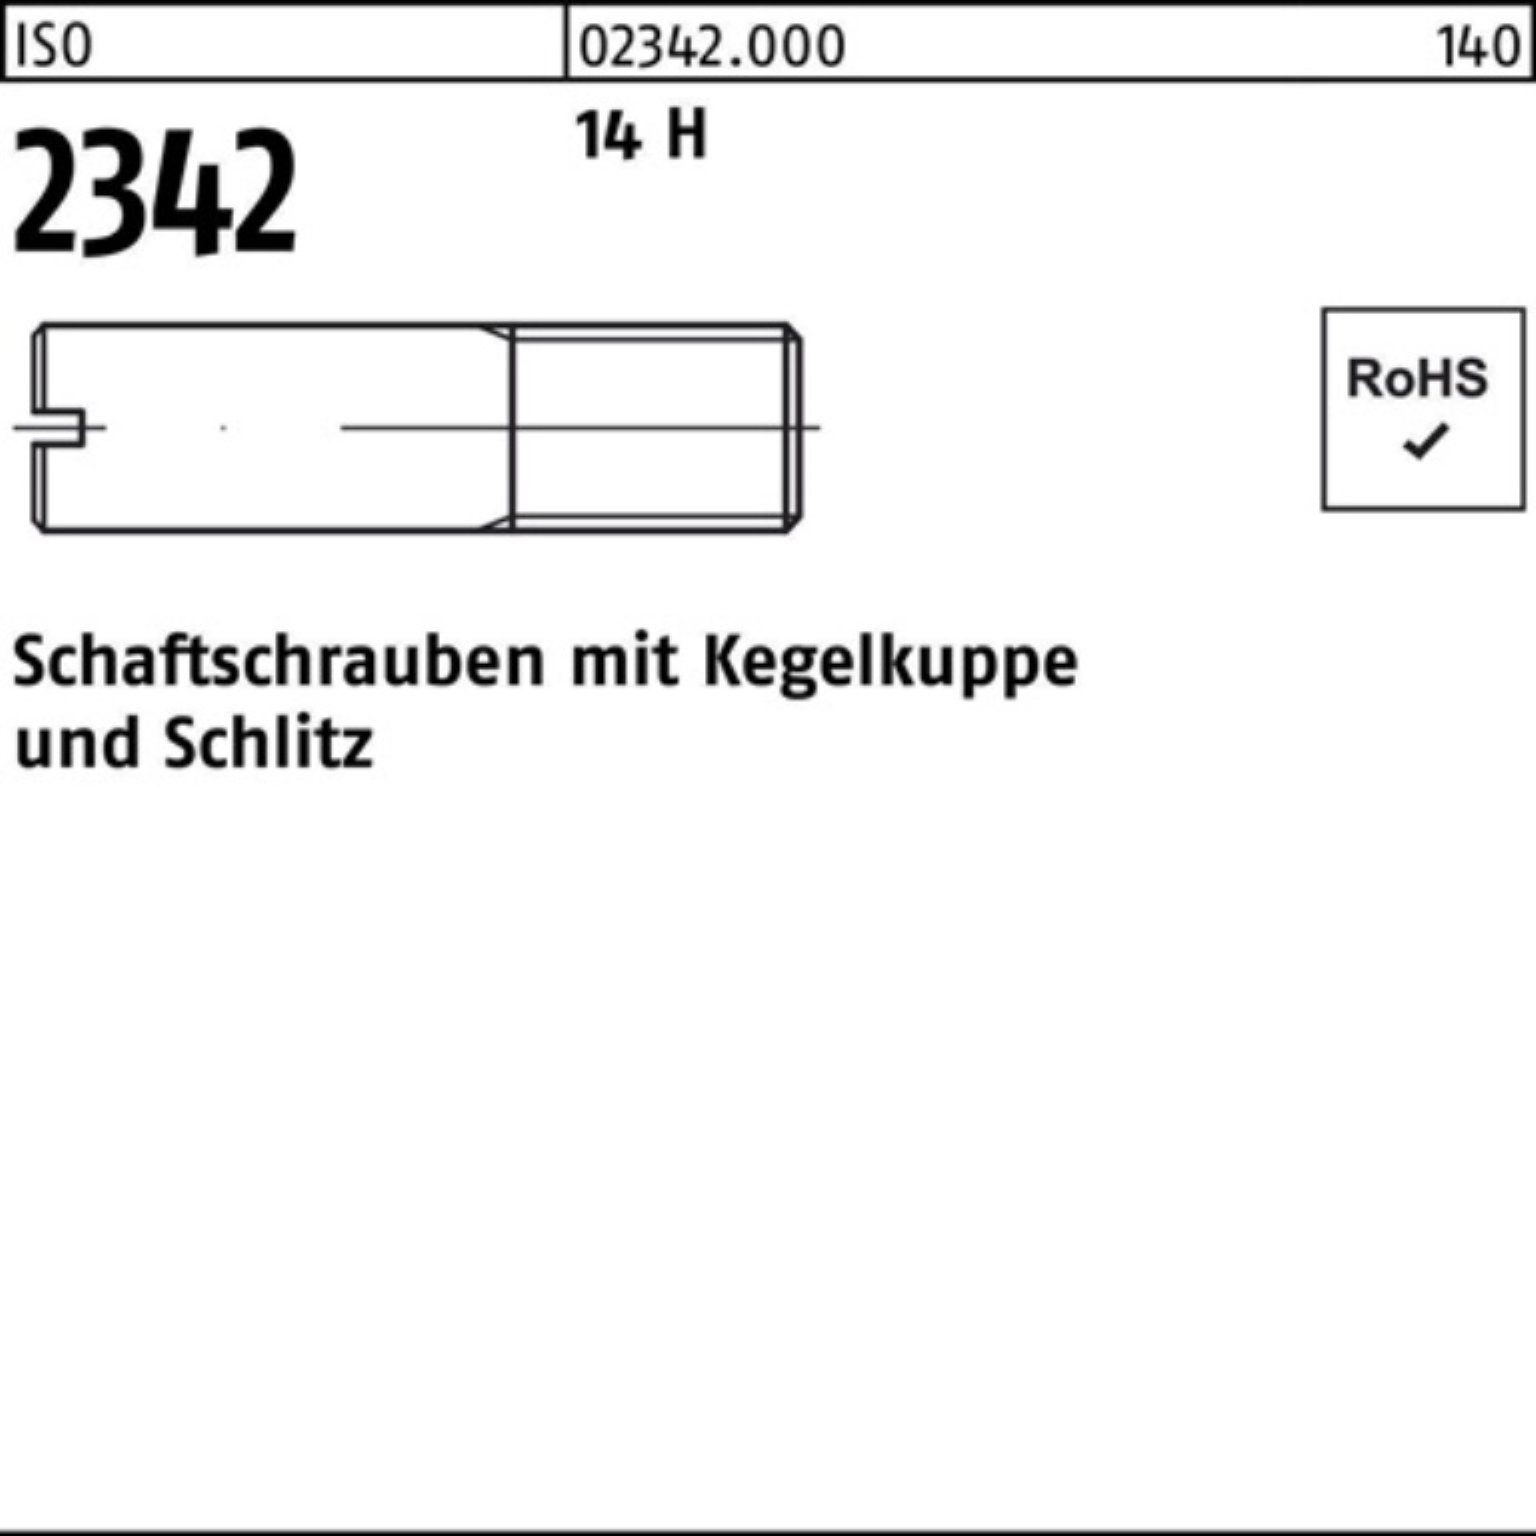 Reyher Schraube 100er Pack Schaftschraube ISO 2342 Kegelkuppe/Schlitz M8x 20 14 H 100